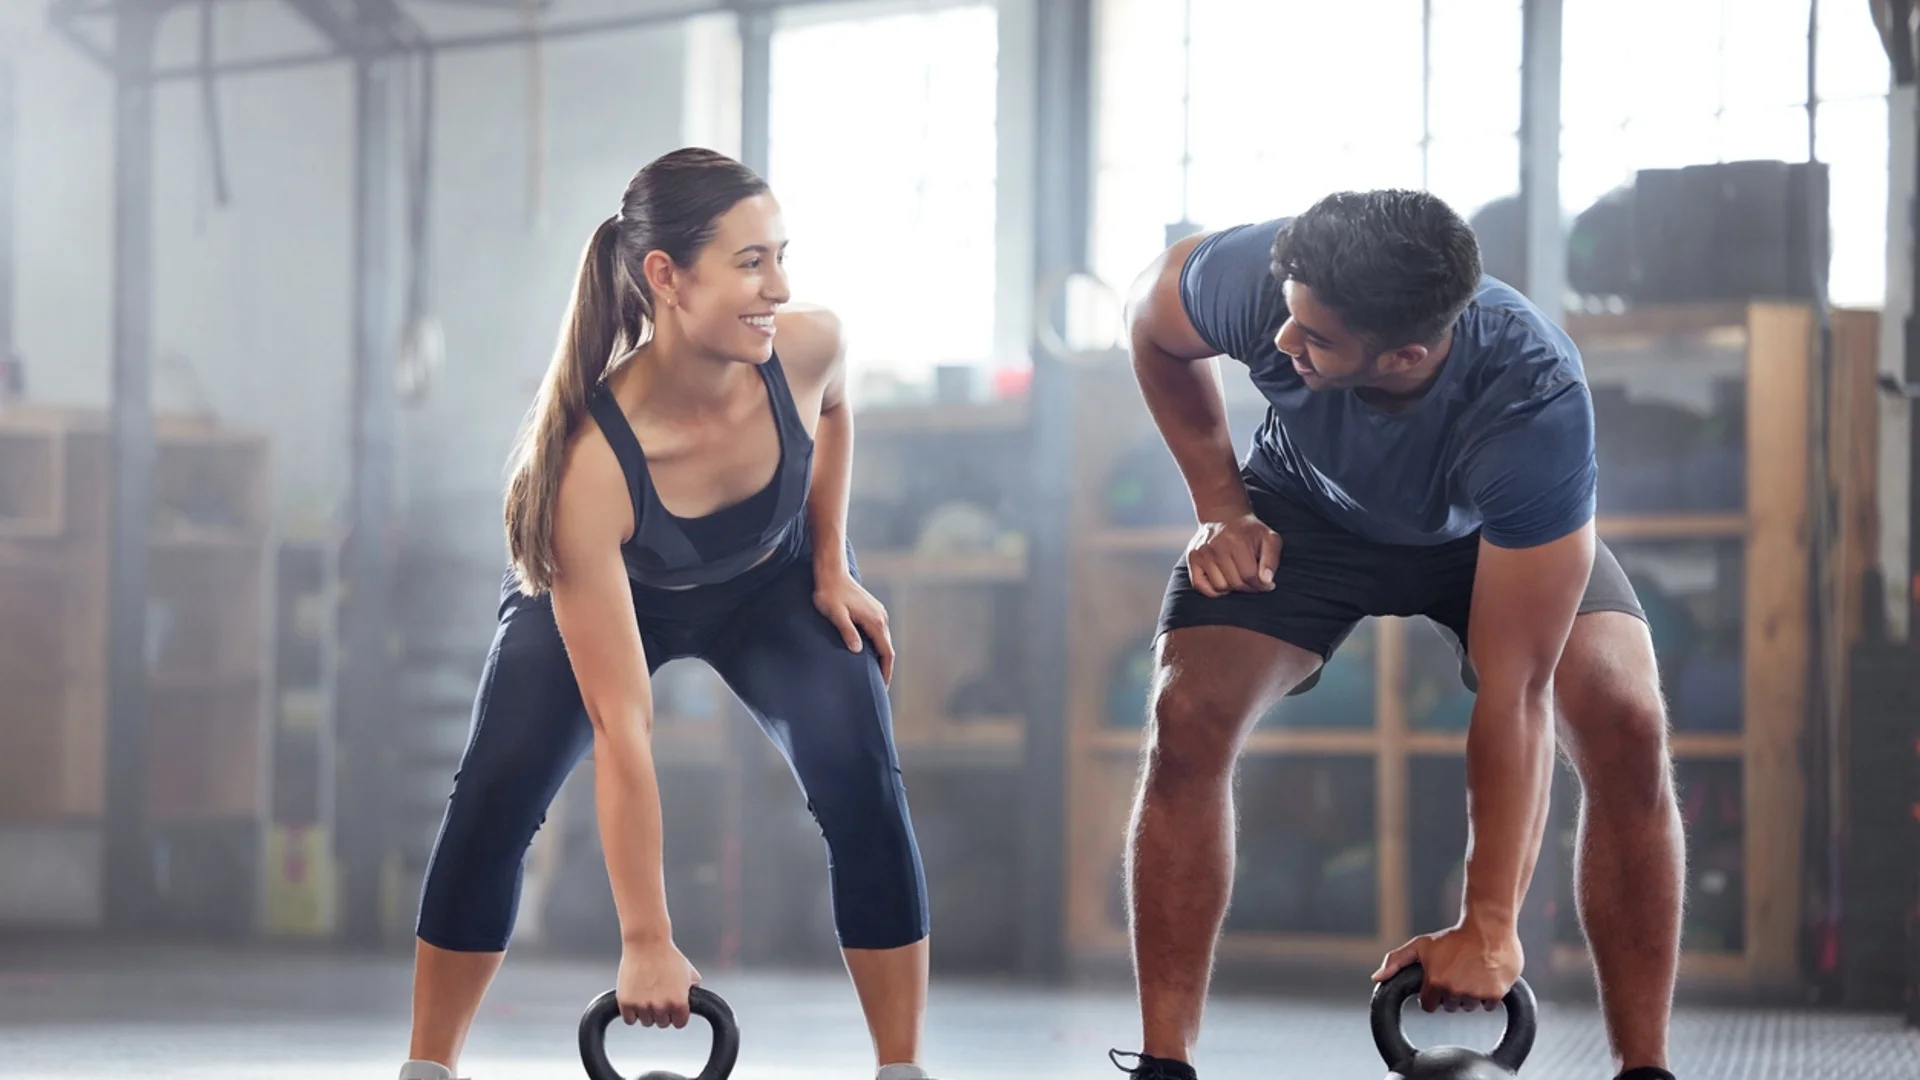 Жените могат да тренират по-малко, а да са по-здрави от мъжете, според проучване